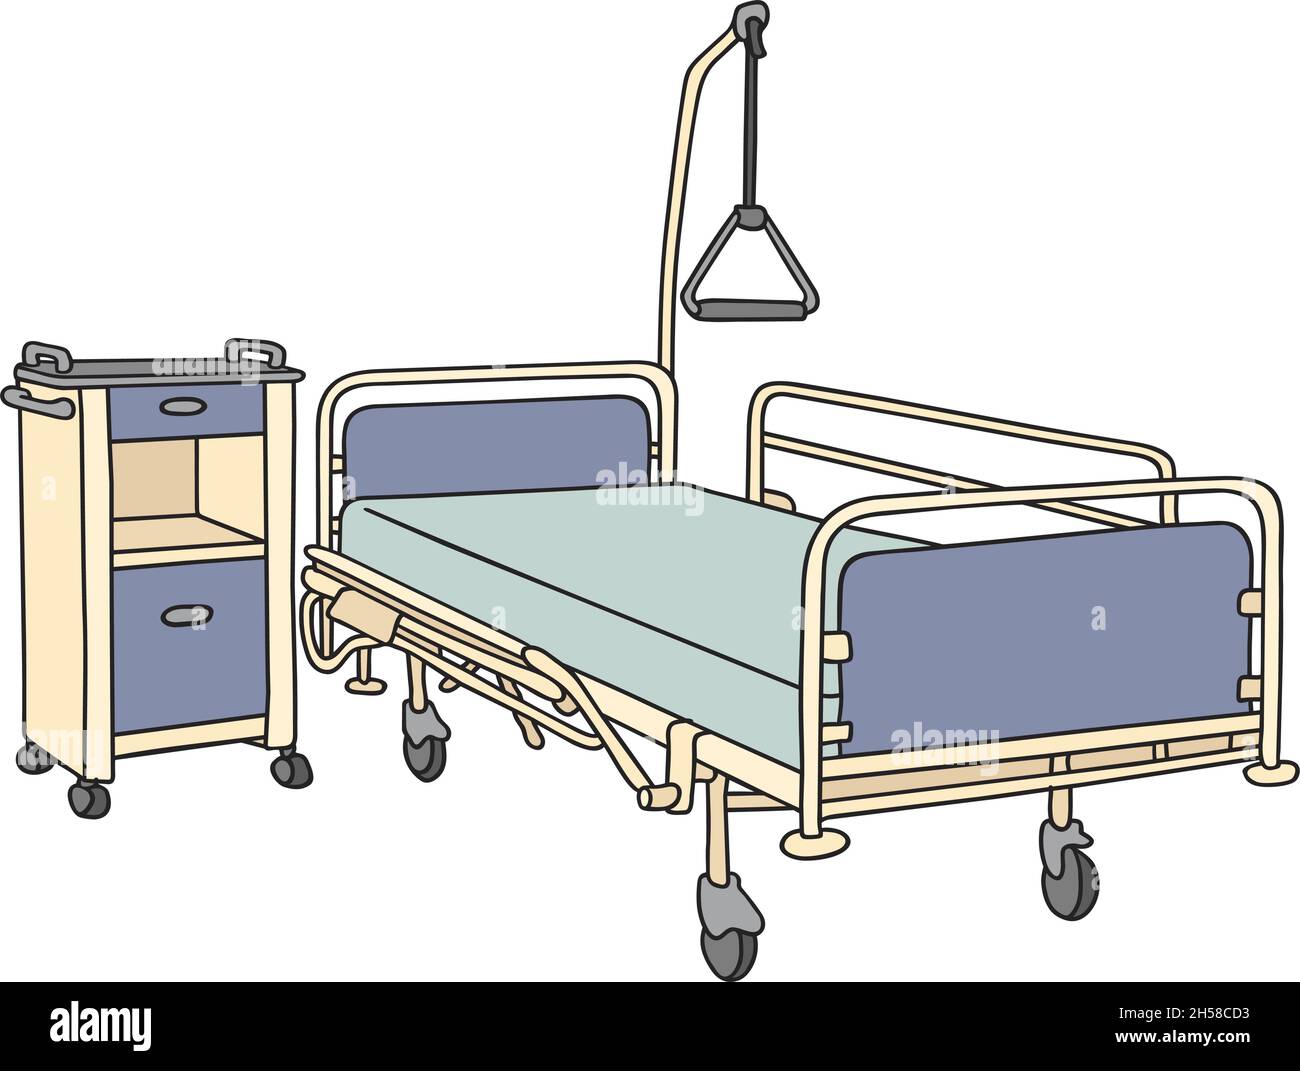 Le dessin à la main vectorisé d'un ancien lit d'hôpital en métal Image  Vectorielle Stock - Alamy